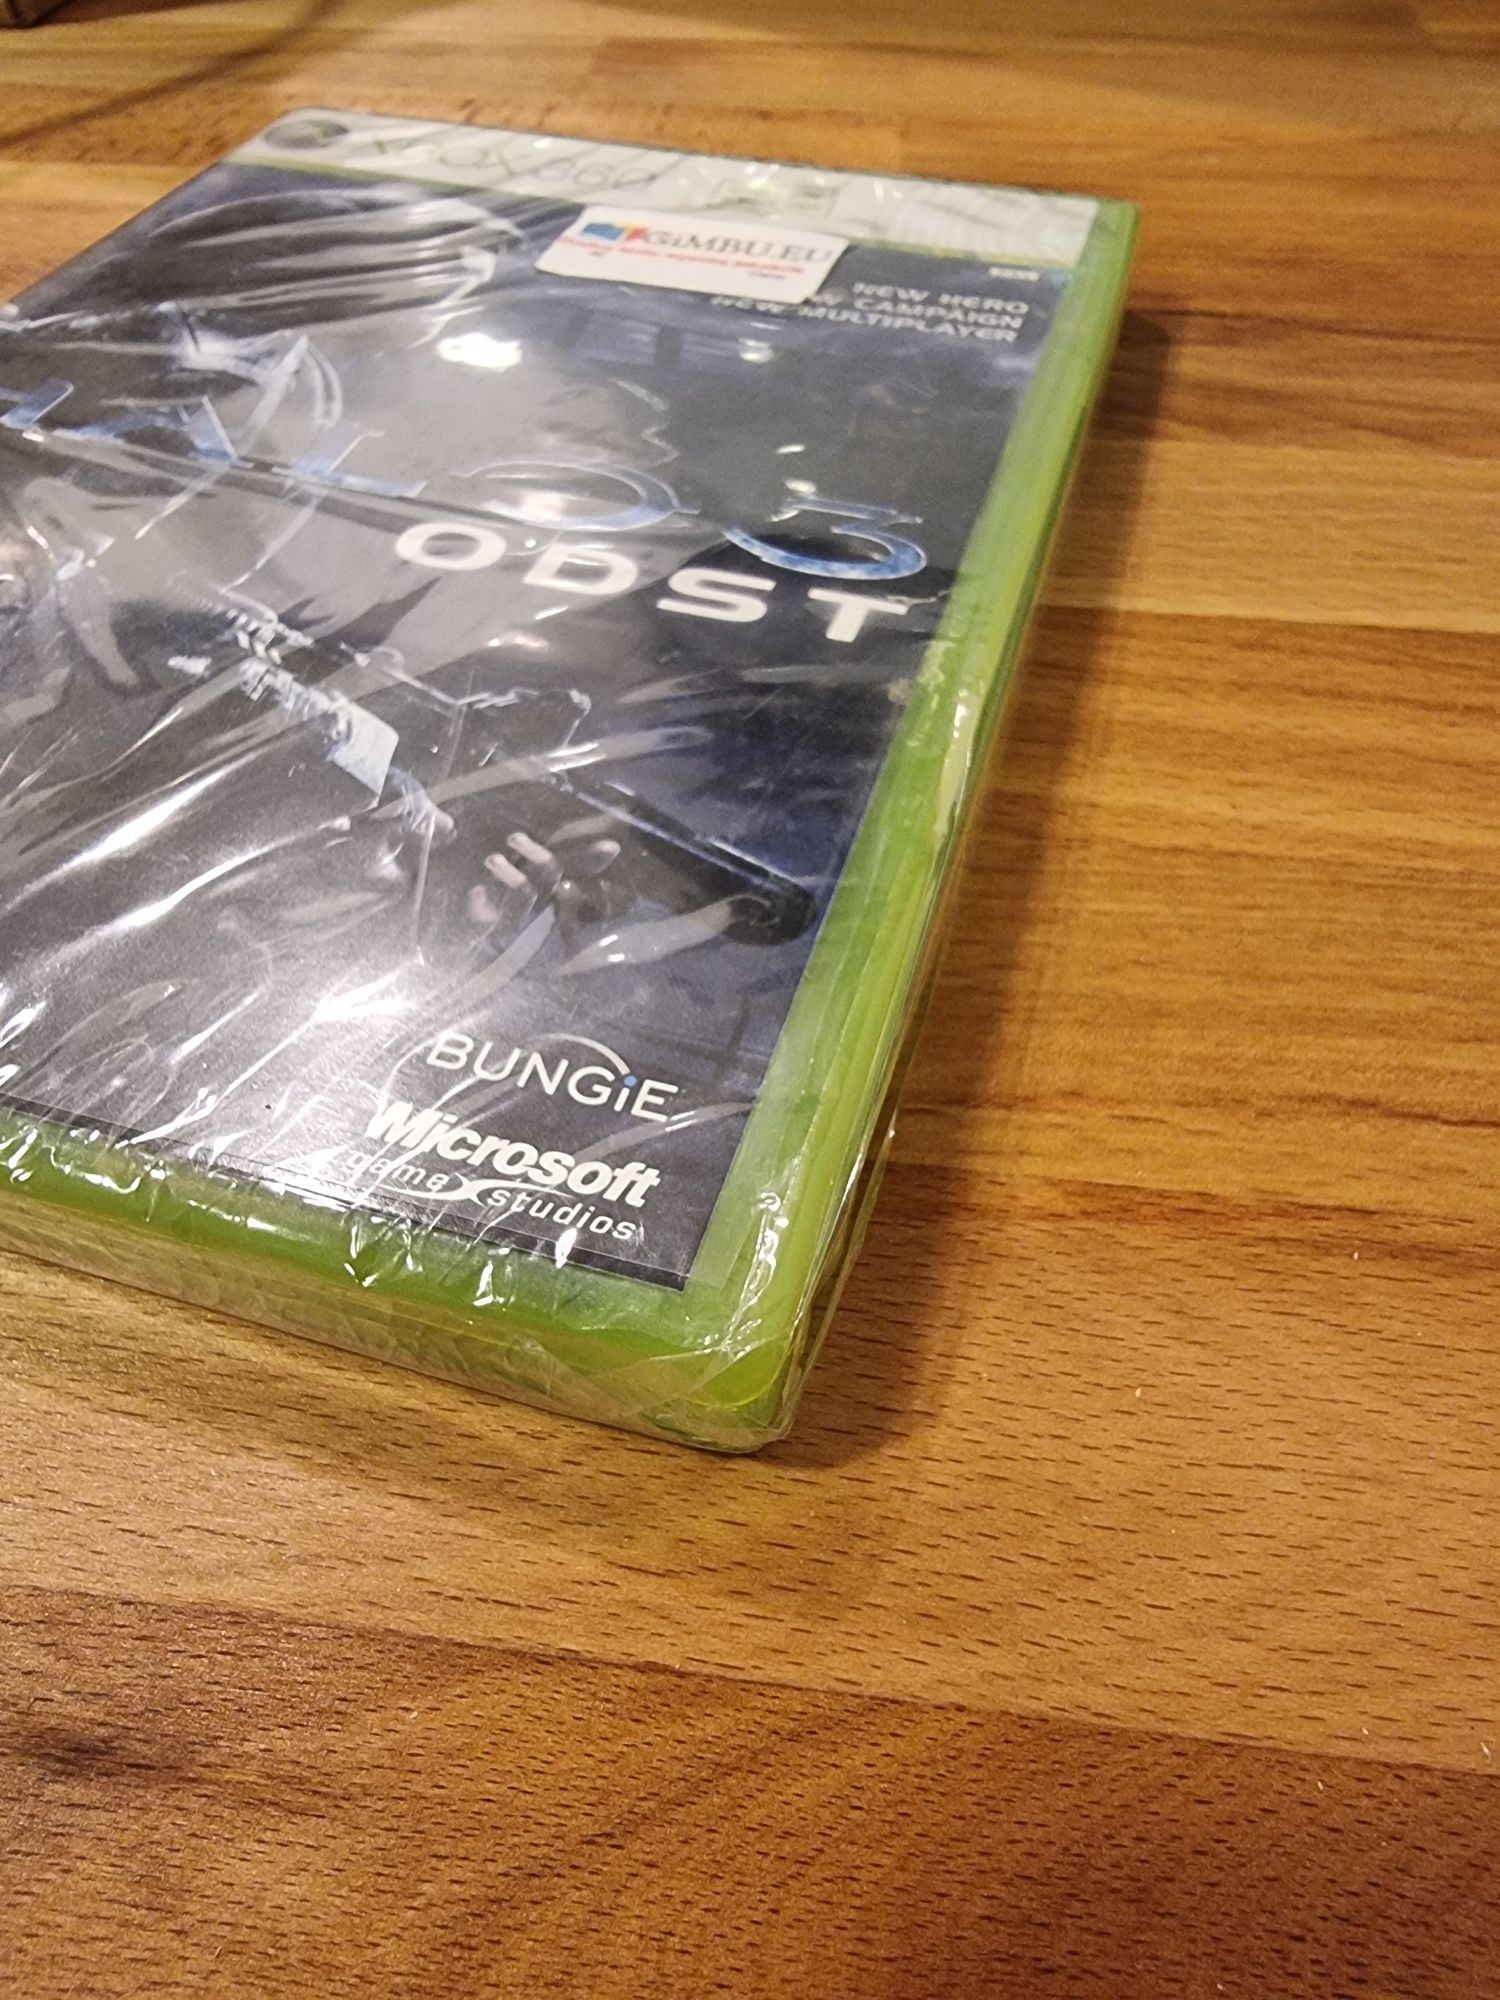 Halo 3 Odst Xbox 360 Nowa w folii